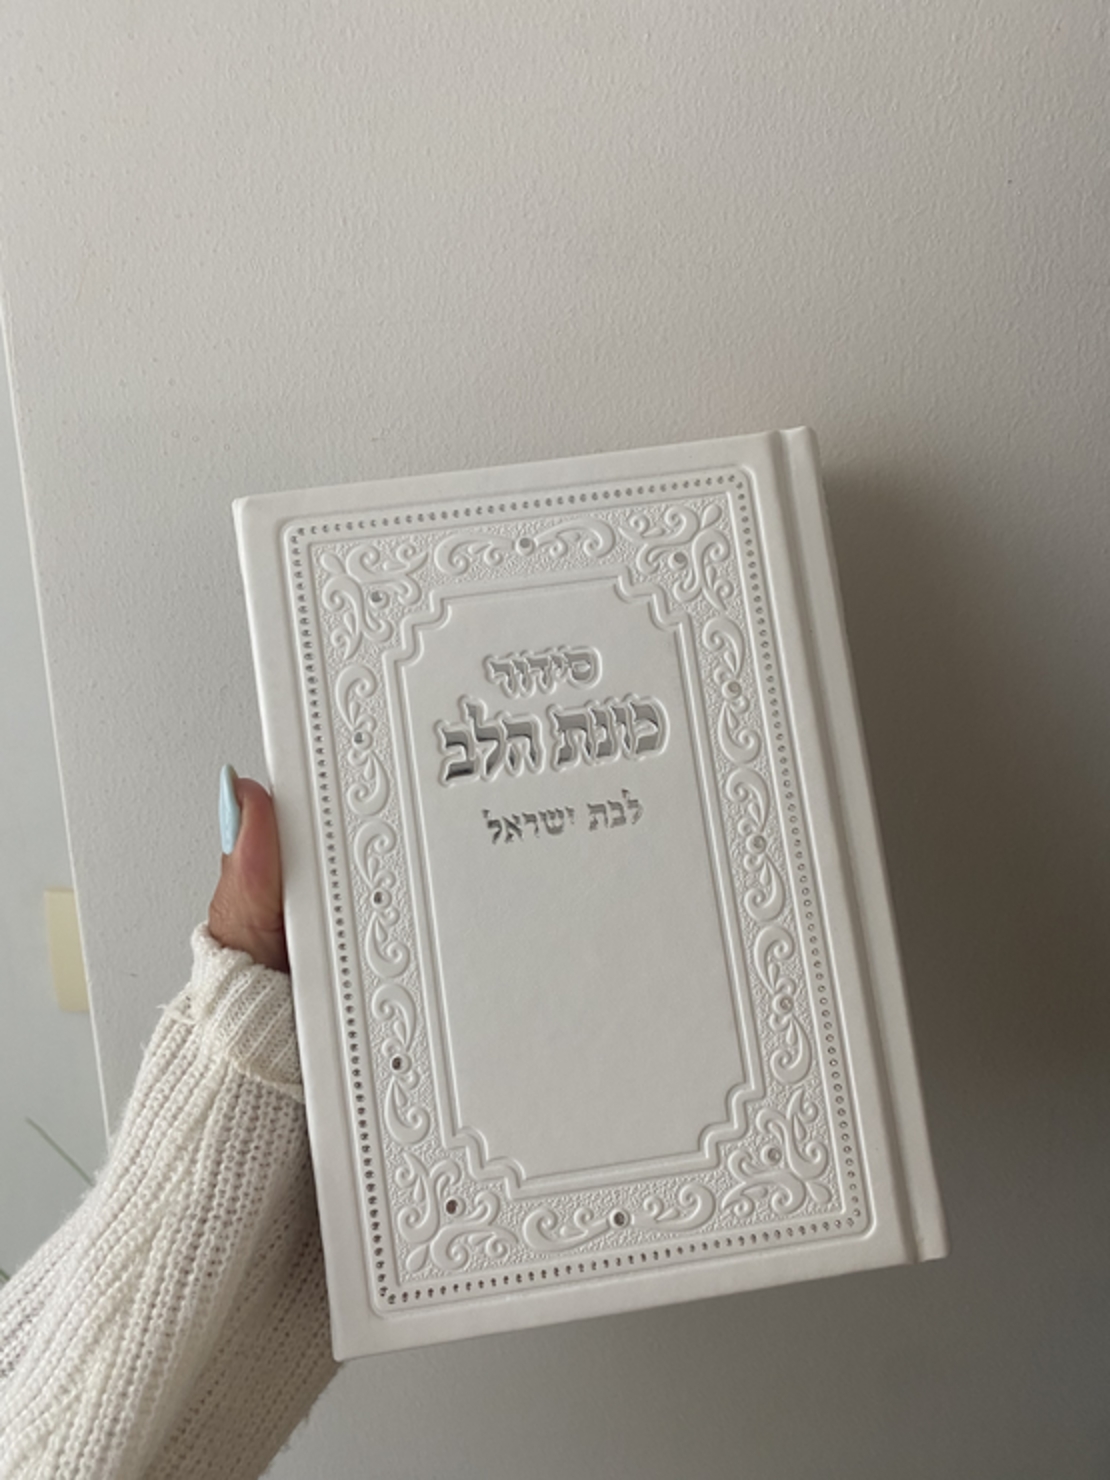 סידור תפילה לבת ישראל בצבע לבן